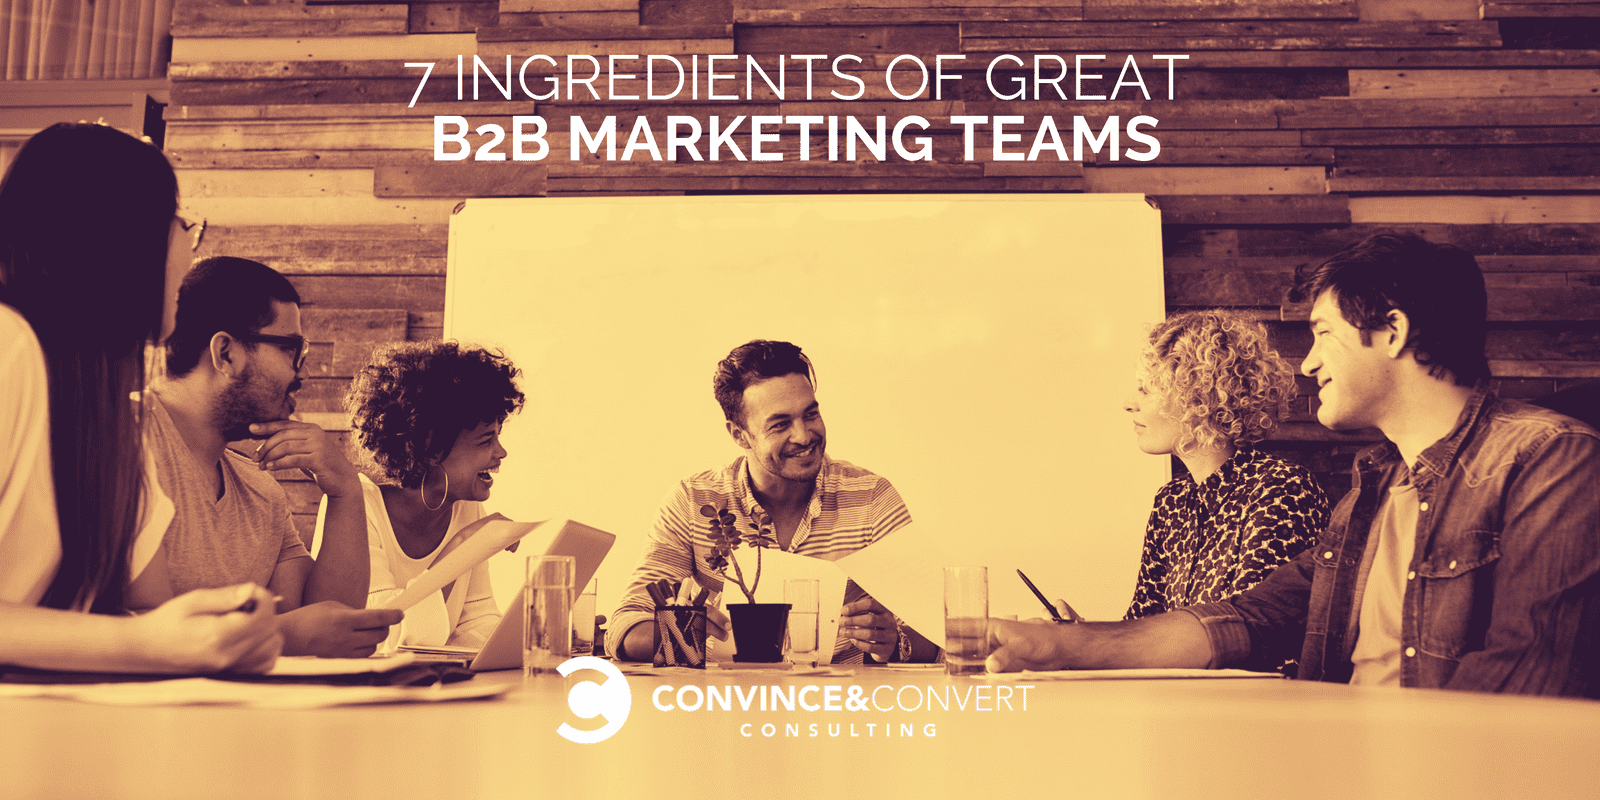 7 ingredientes de grandes equipos de marketing B2B